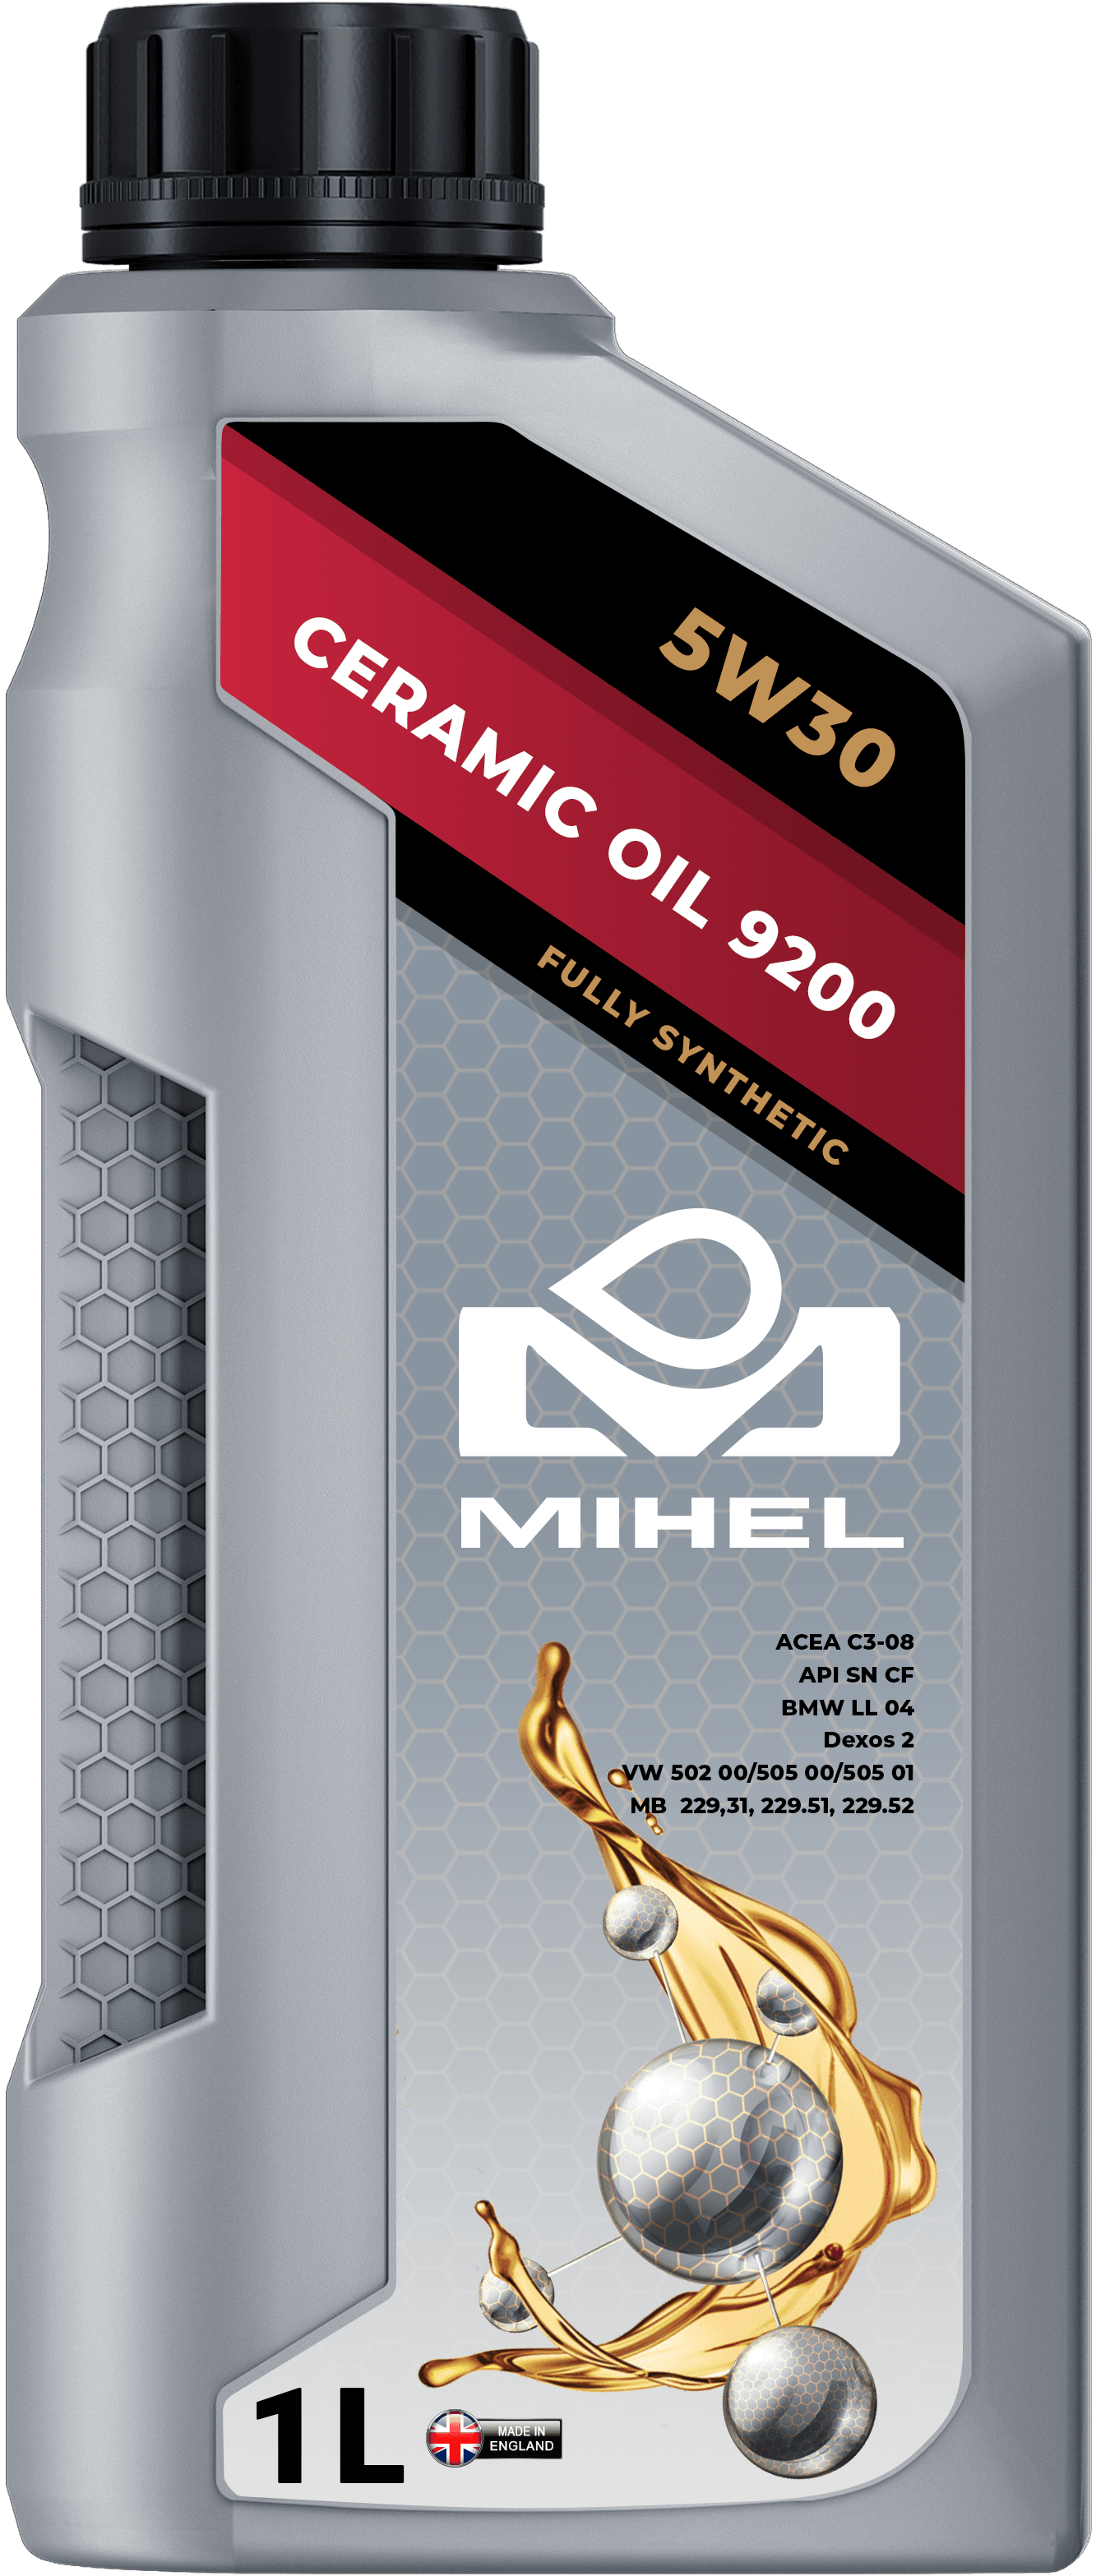 MIHEL Ceramic Oil® 9200 5W30